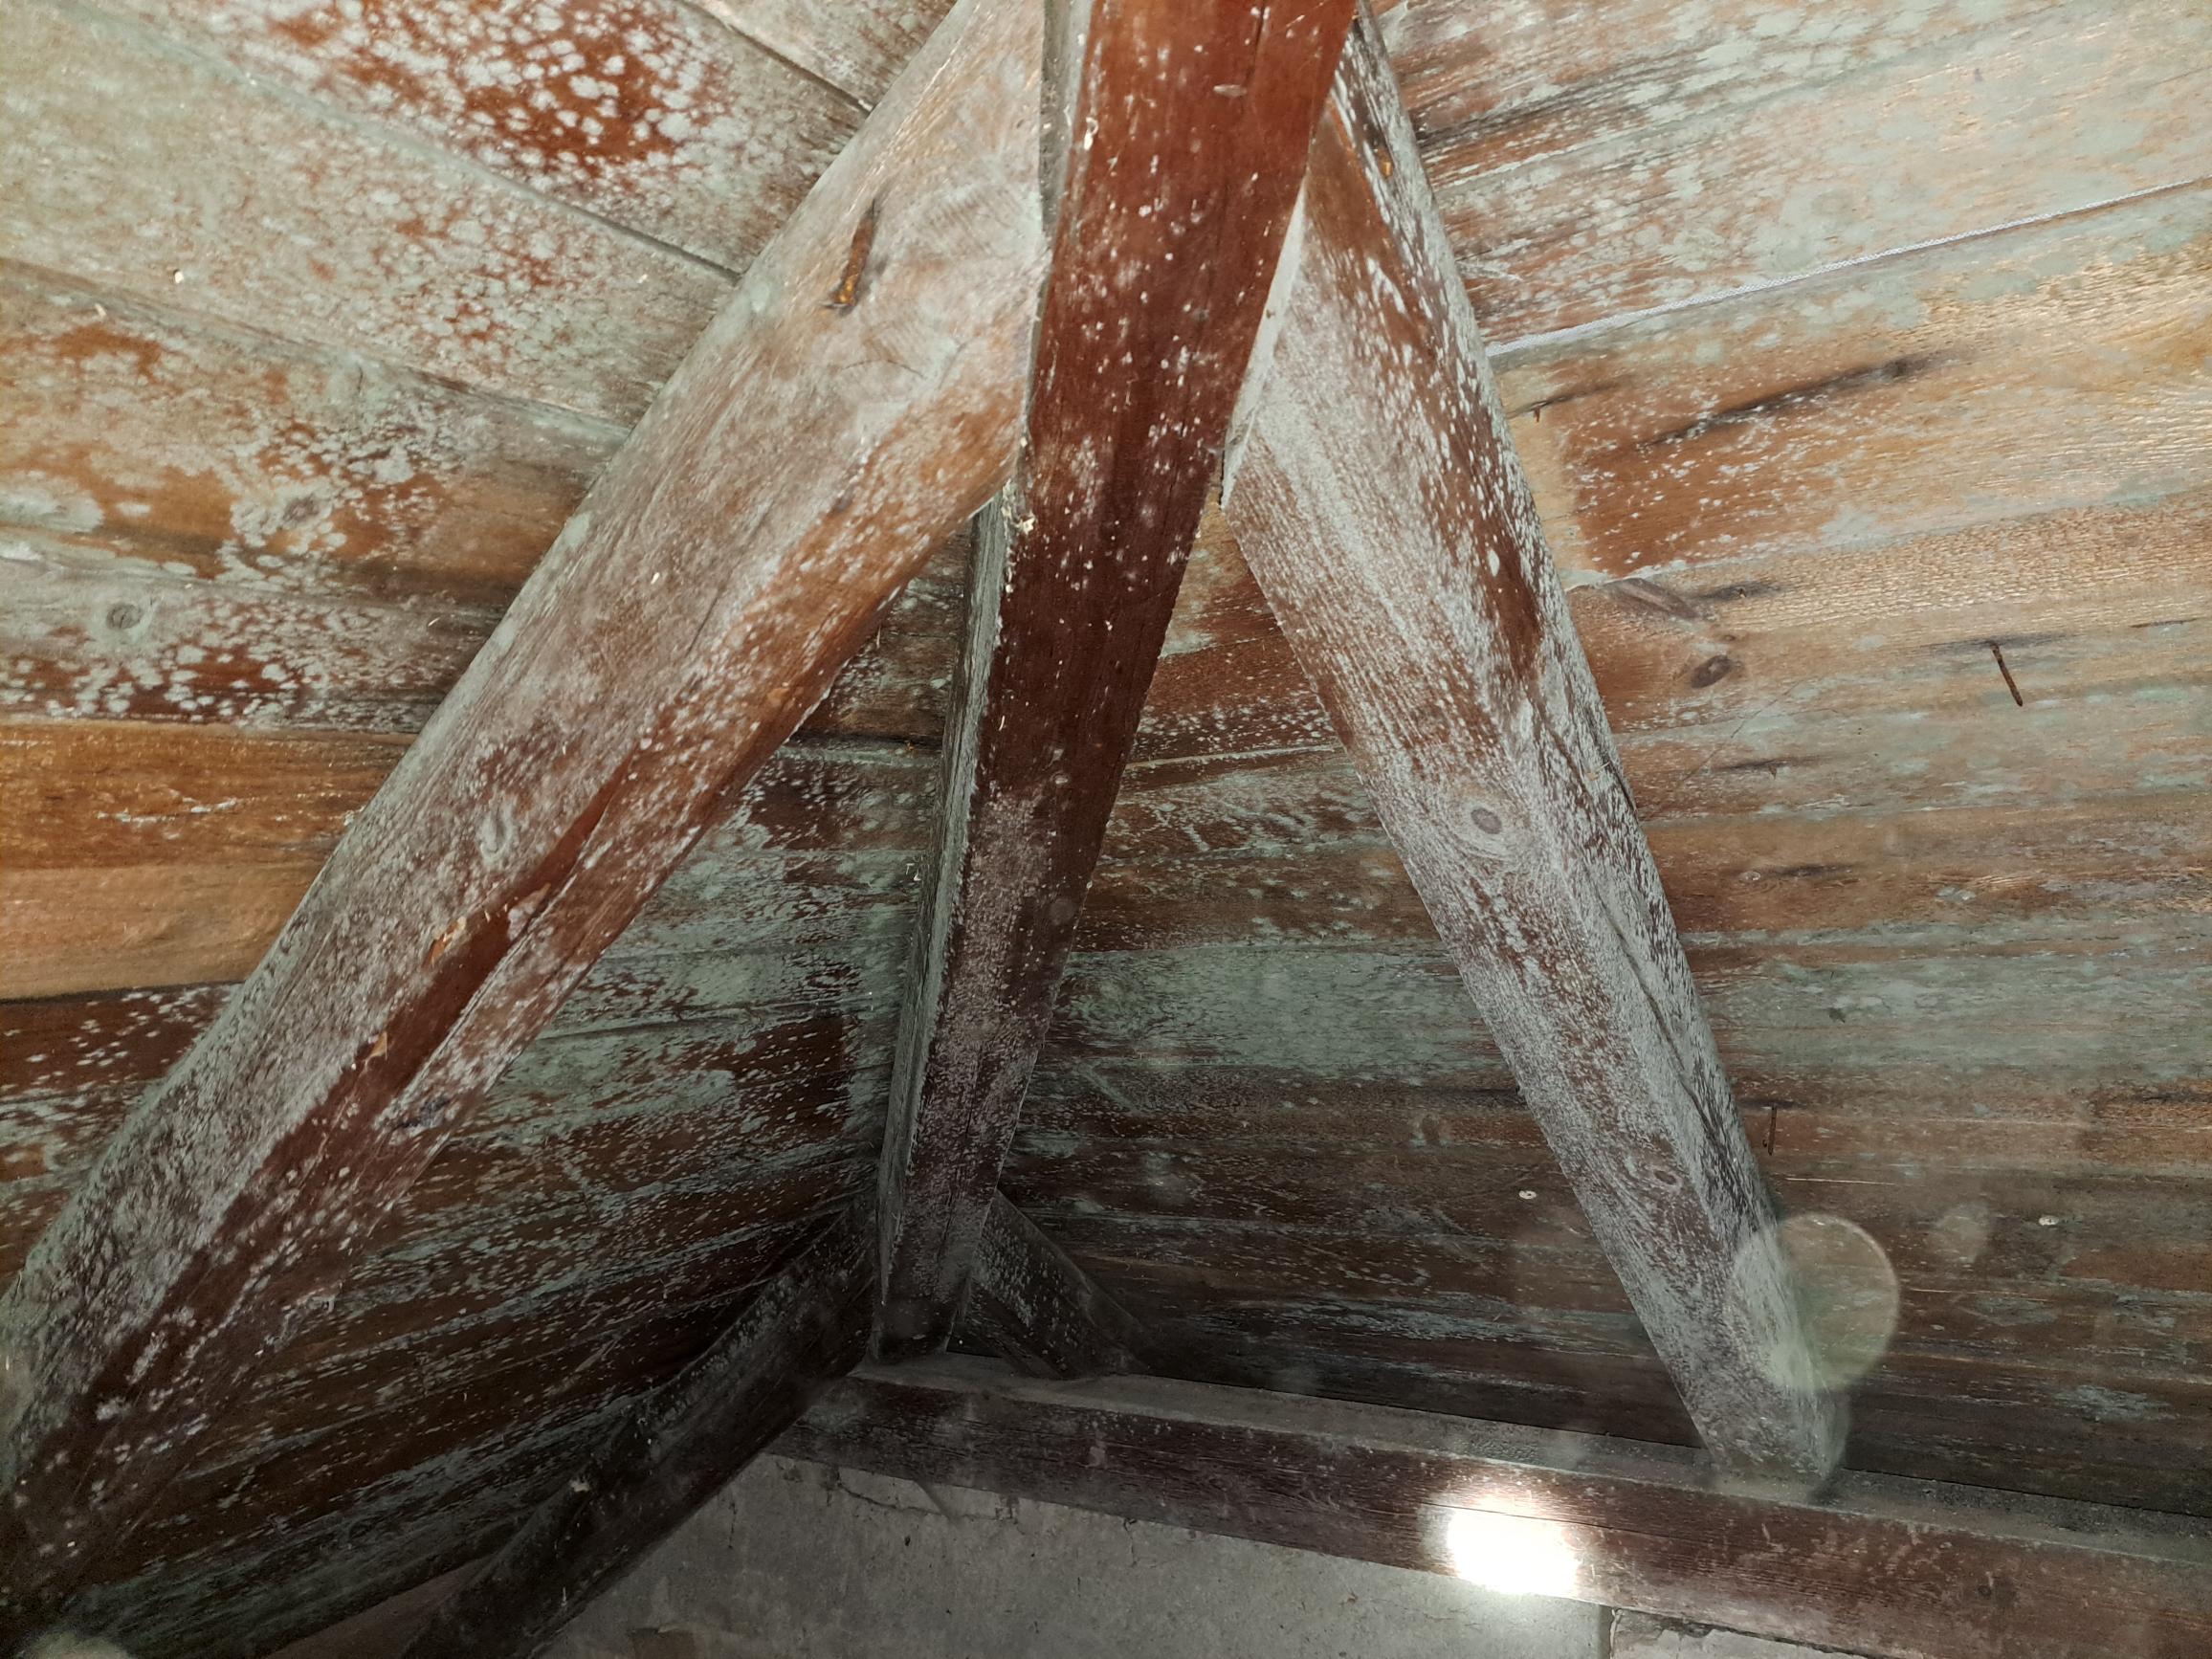 Dřevěná krovová konstrukce s bílým povlakem plísně, což ukazuje na problémy s ventilací nebo vlhkostí